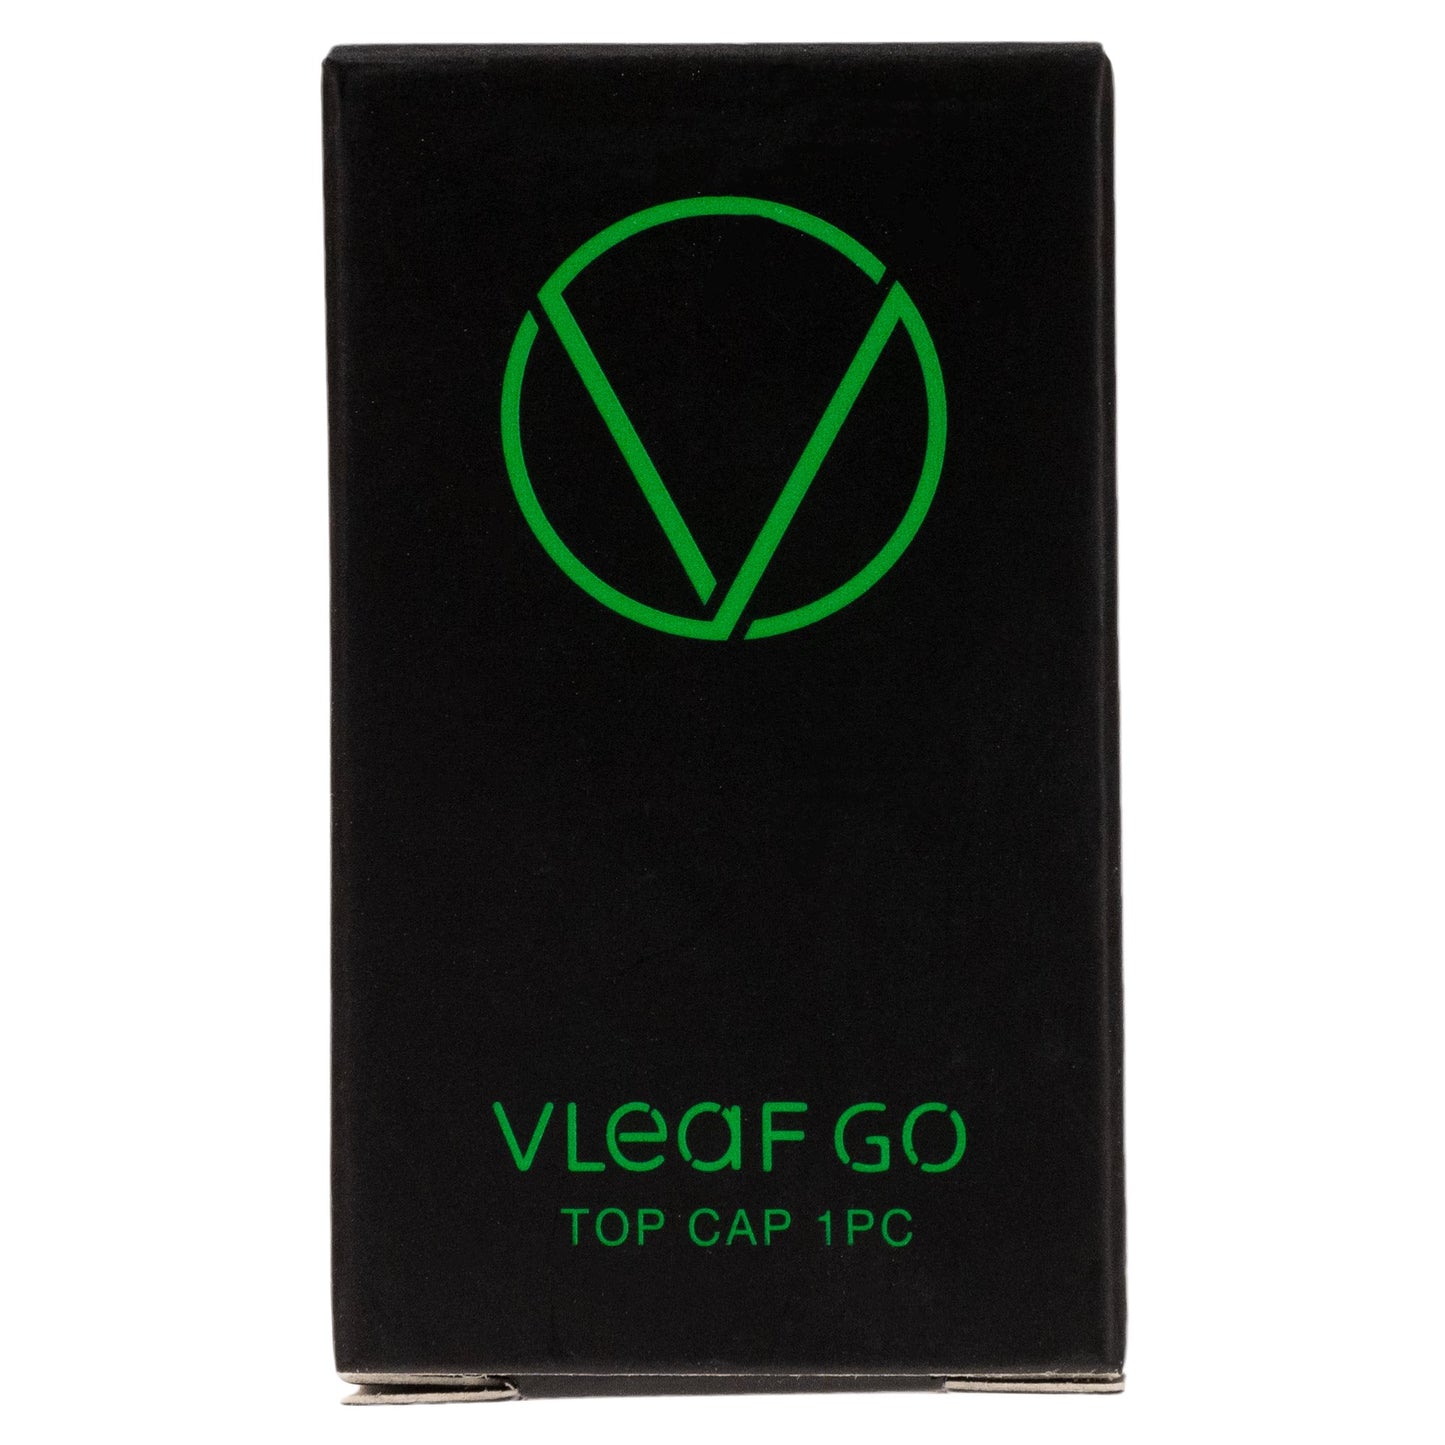 VLeaF GO Top Cap Vaporizers Vivant 